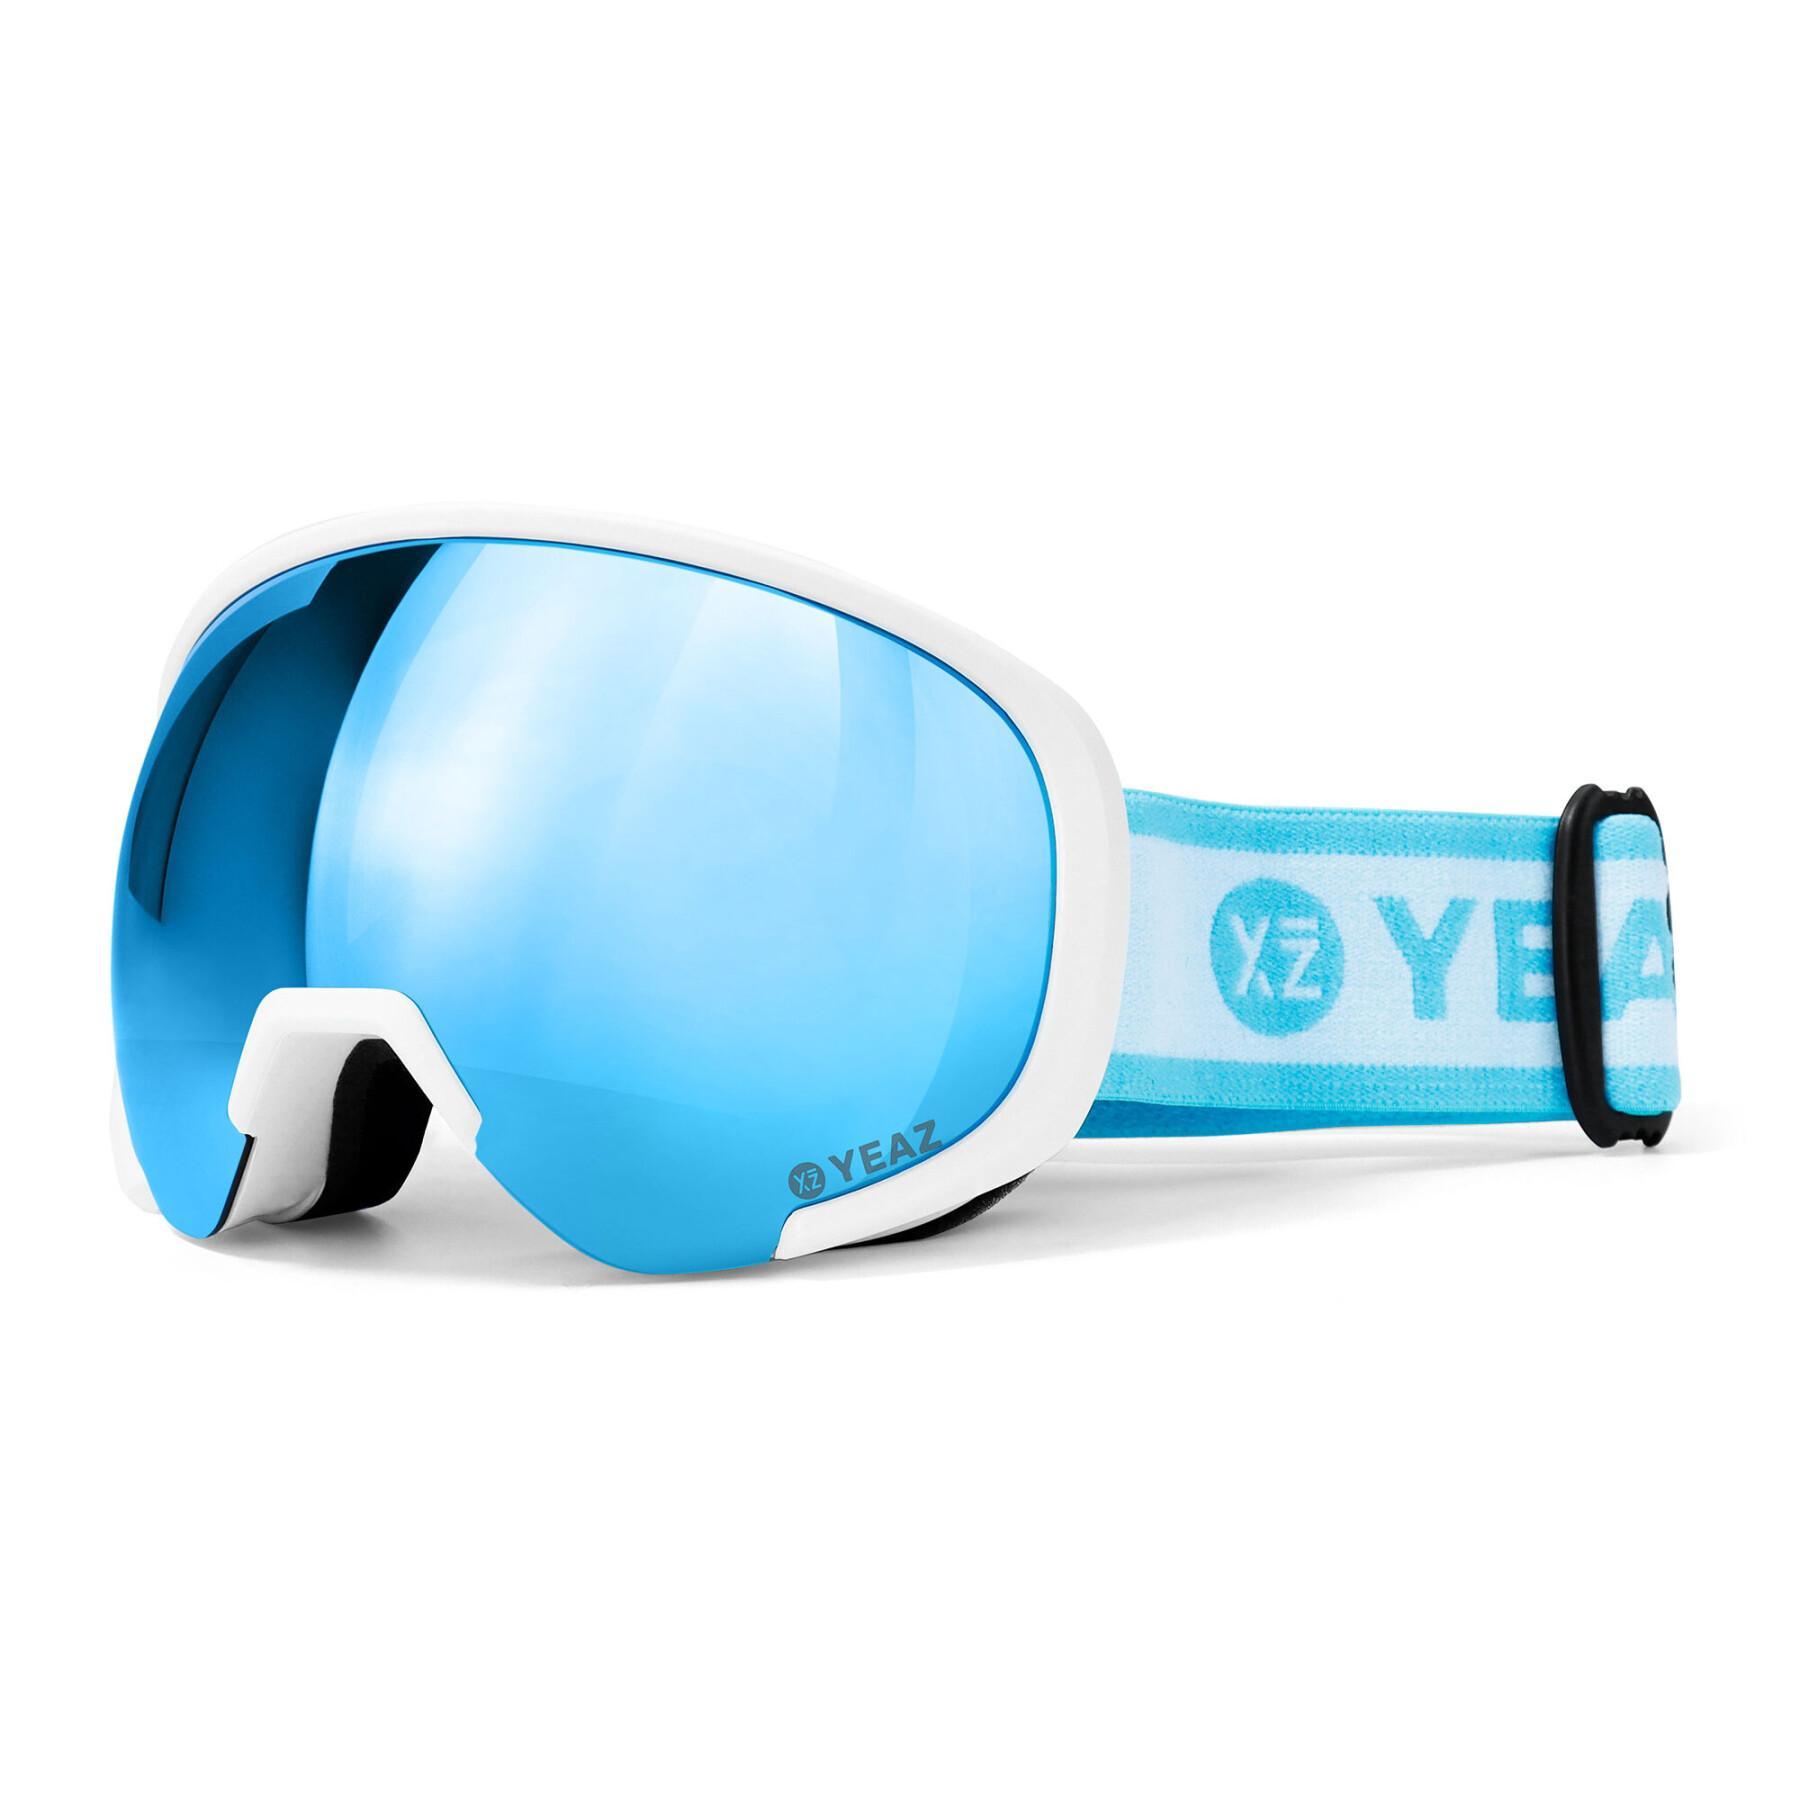 Gafas de esquí y snowboard Yeaz Black Run